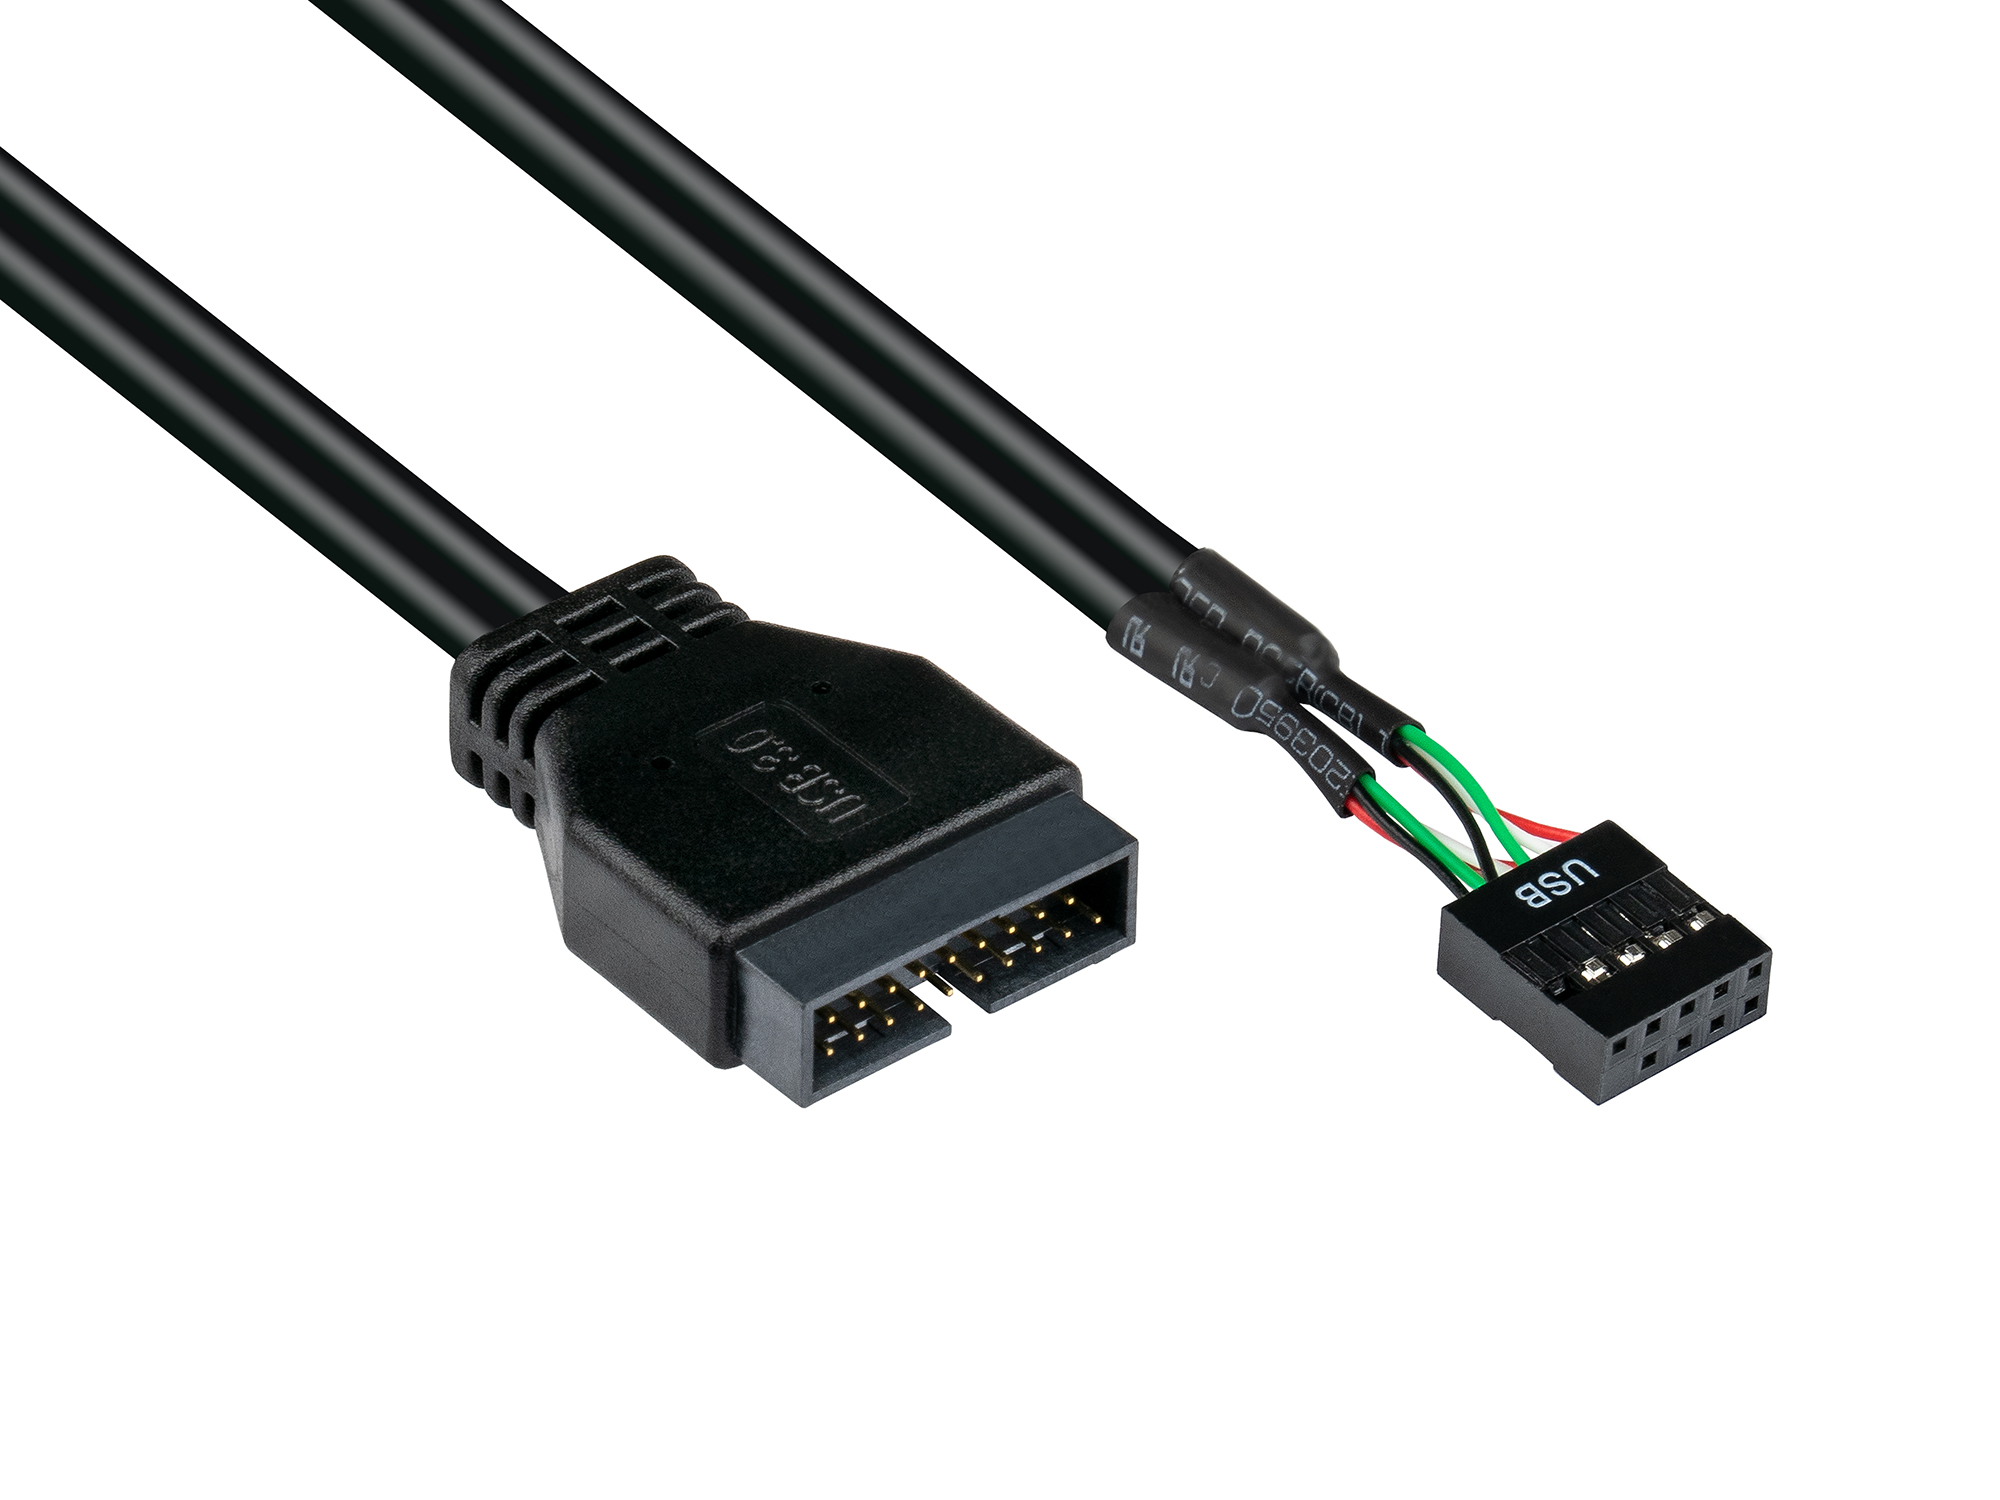 Adapter intern USB 3.0 Pin-Header Stecker an USB 2.0 Pin-Header Buchse, schwarz, 0,45m